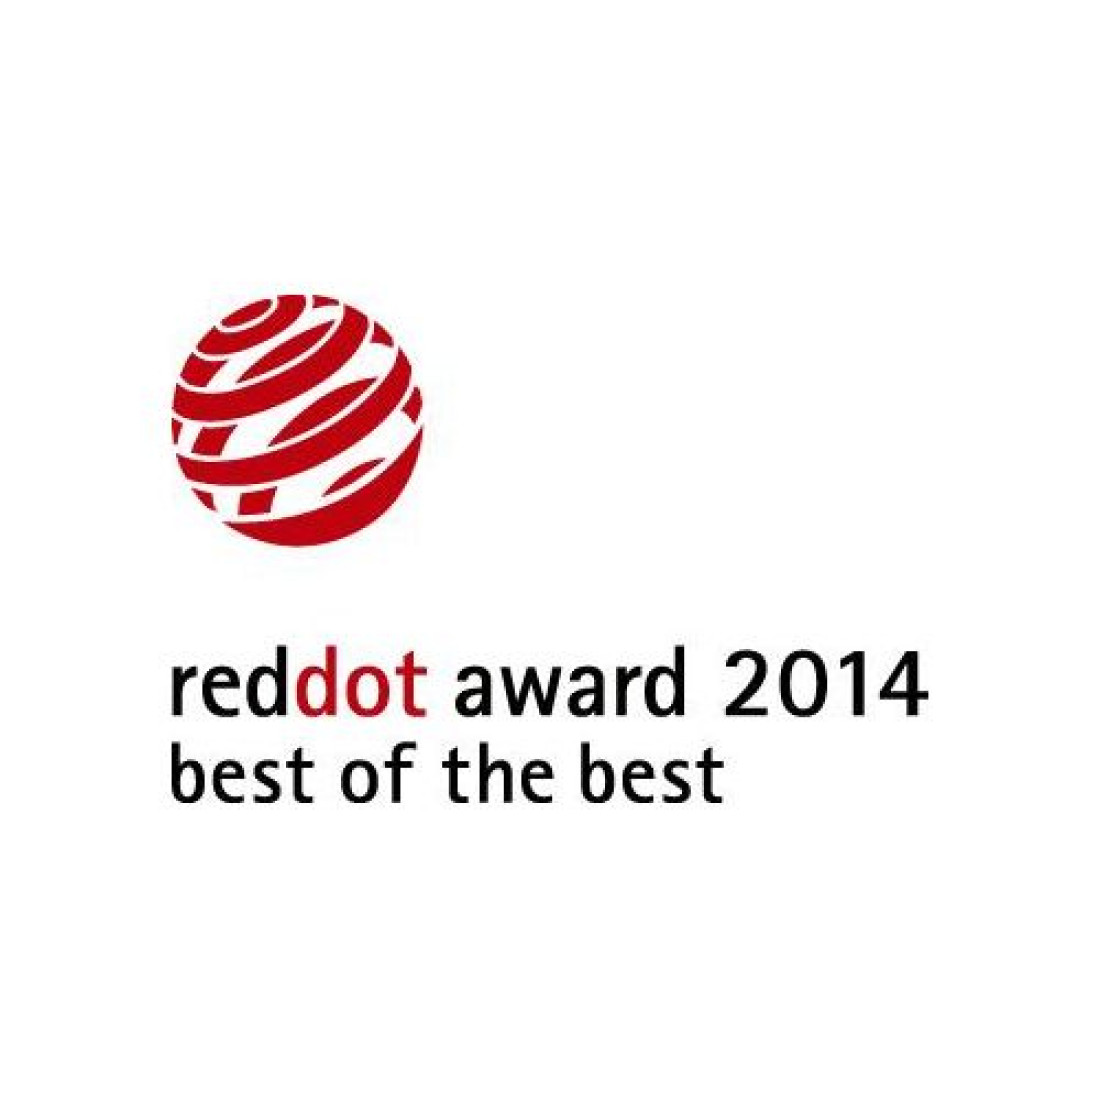 Urządzenia Kärcher uhonorowane nagrodami Red Dot Design 2014